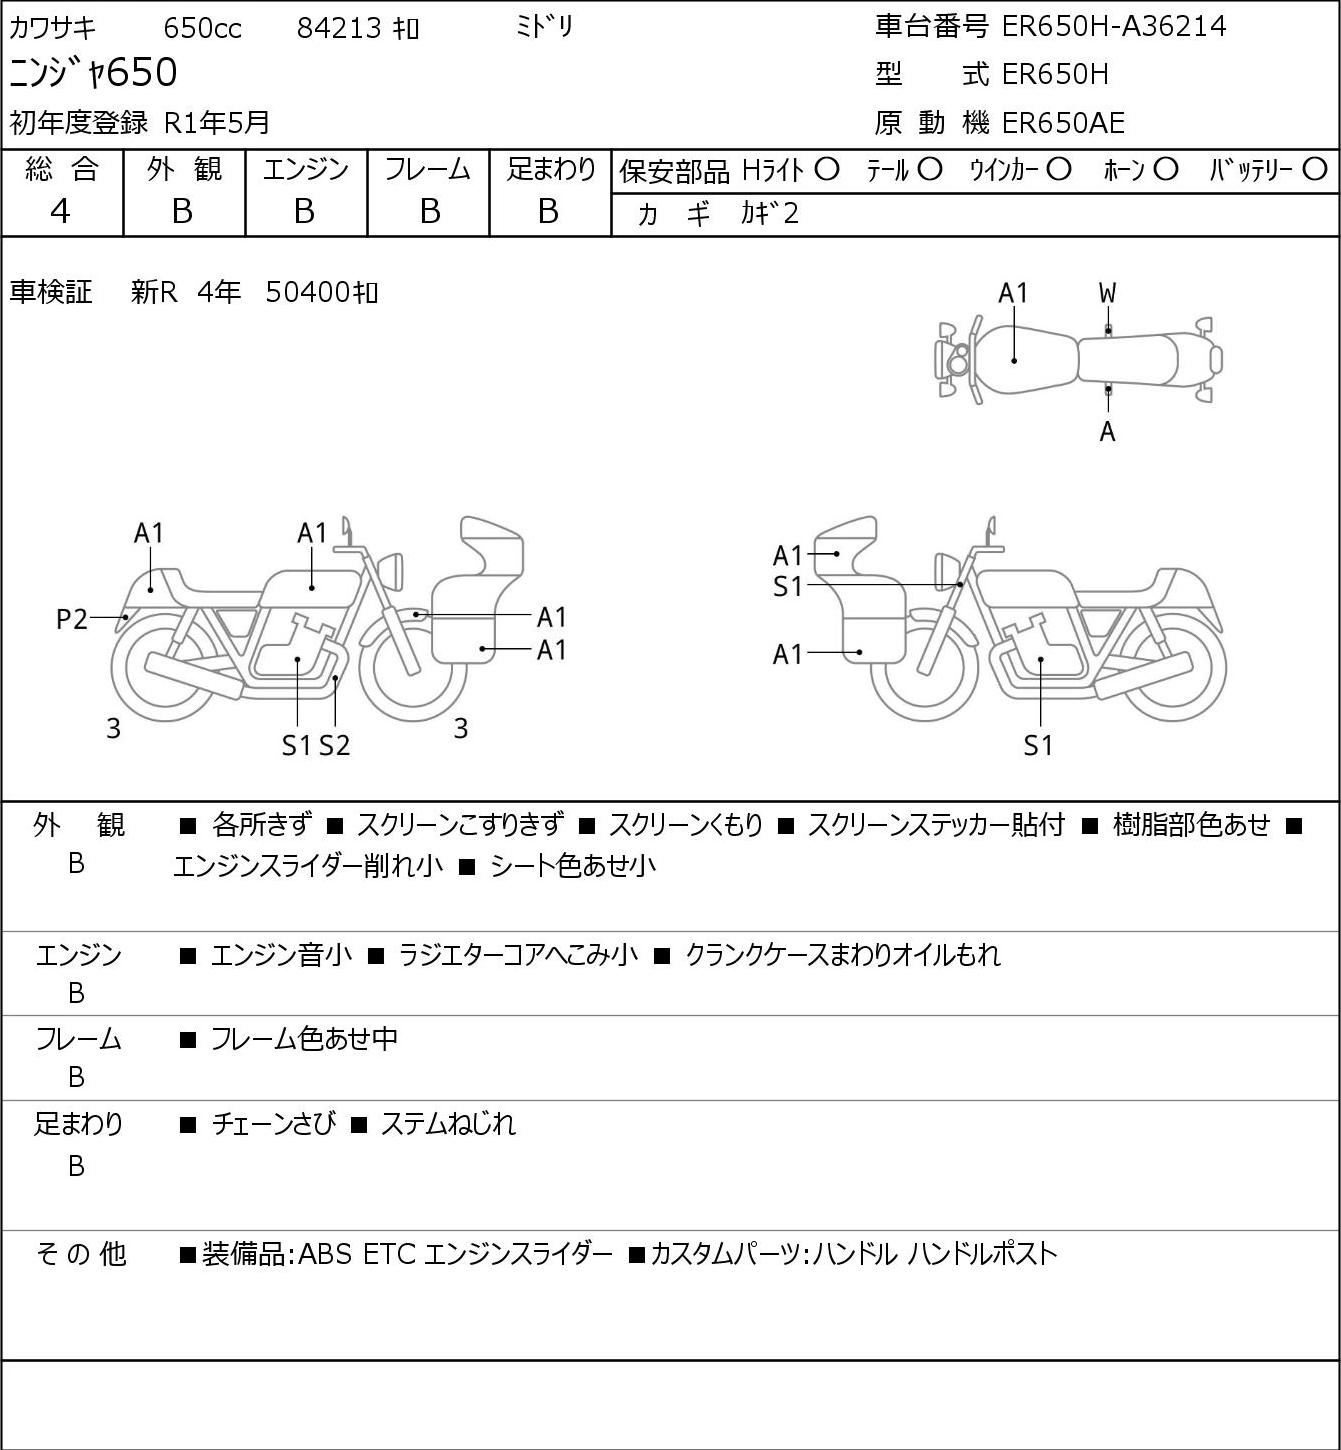 Kawasaki NINJA 650 ER650H 2019г. 84213